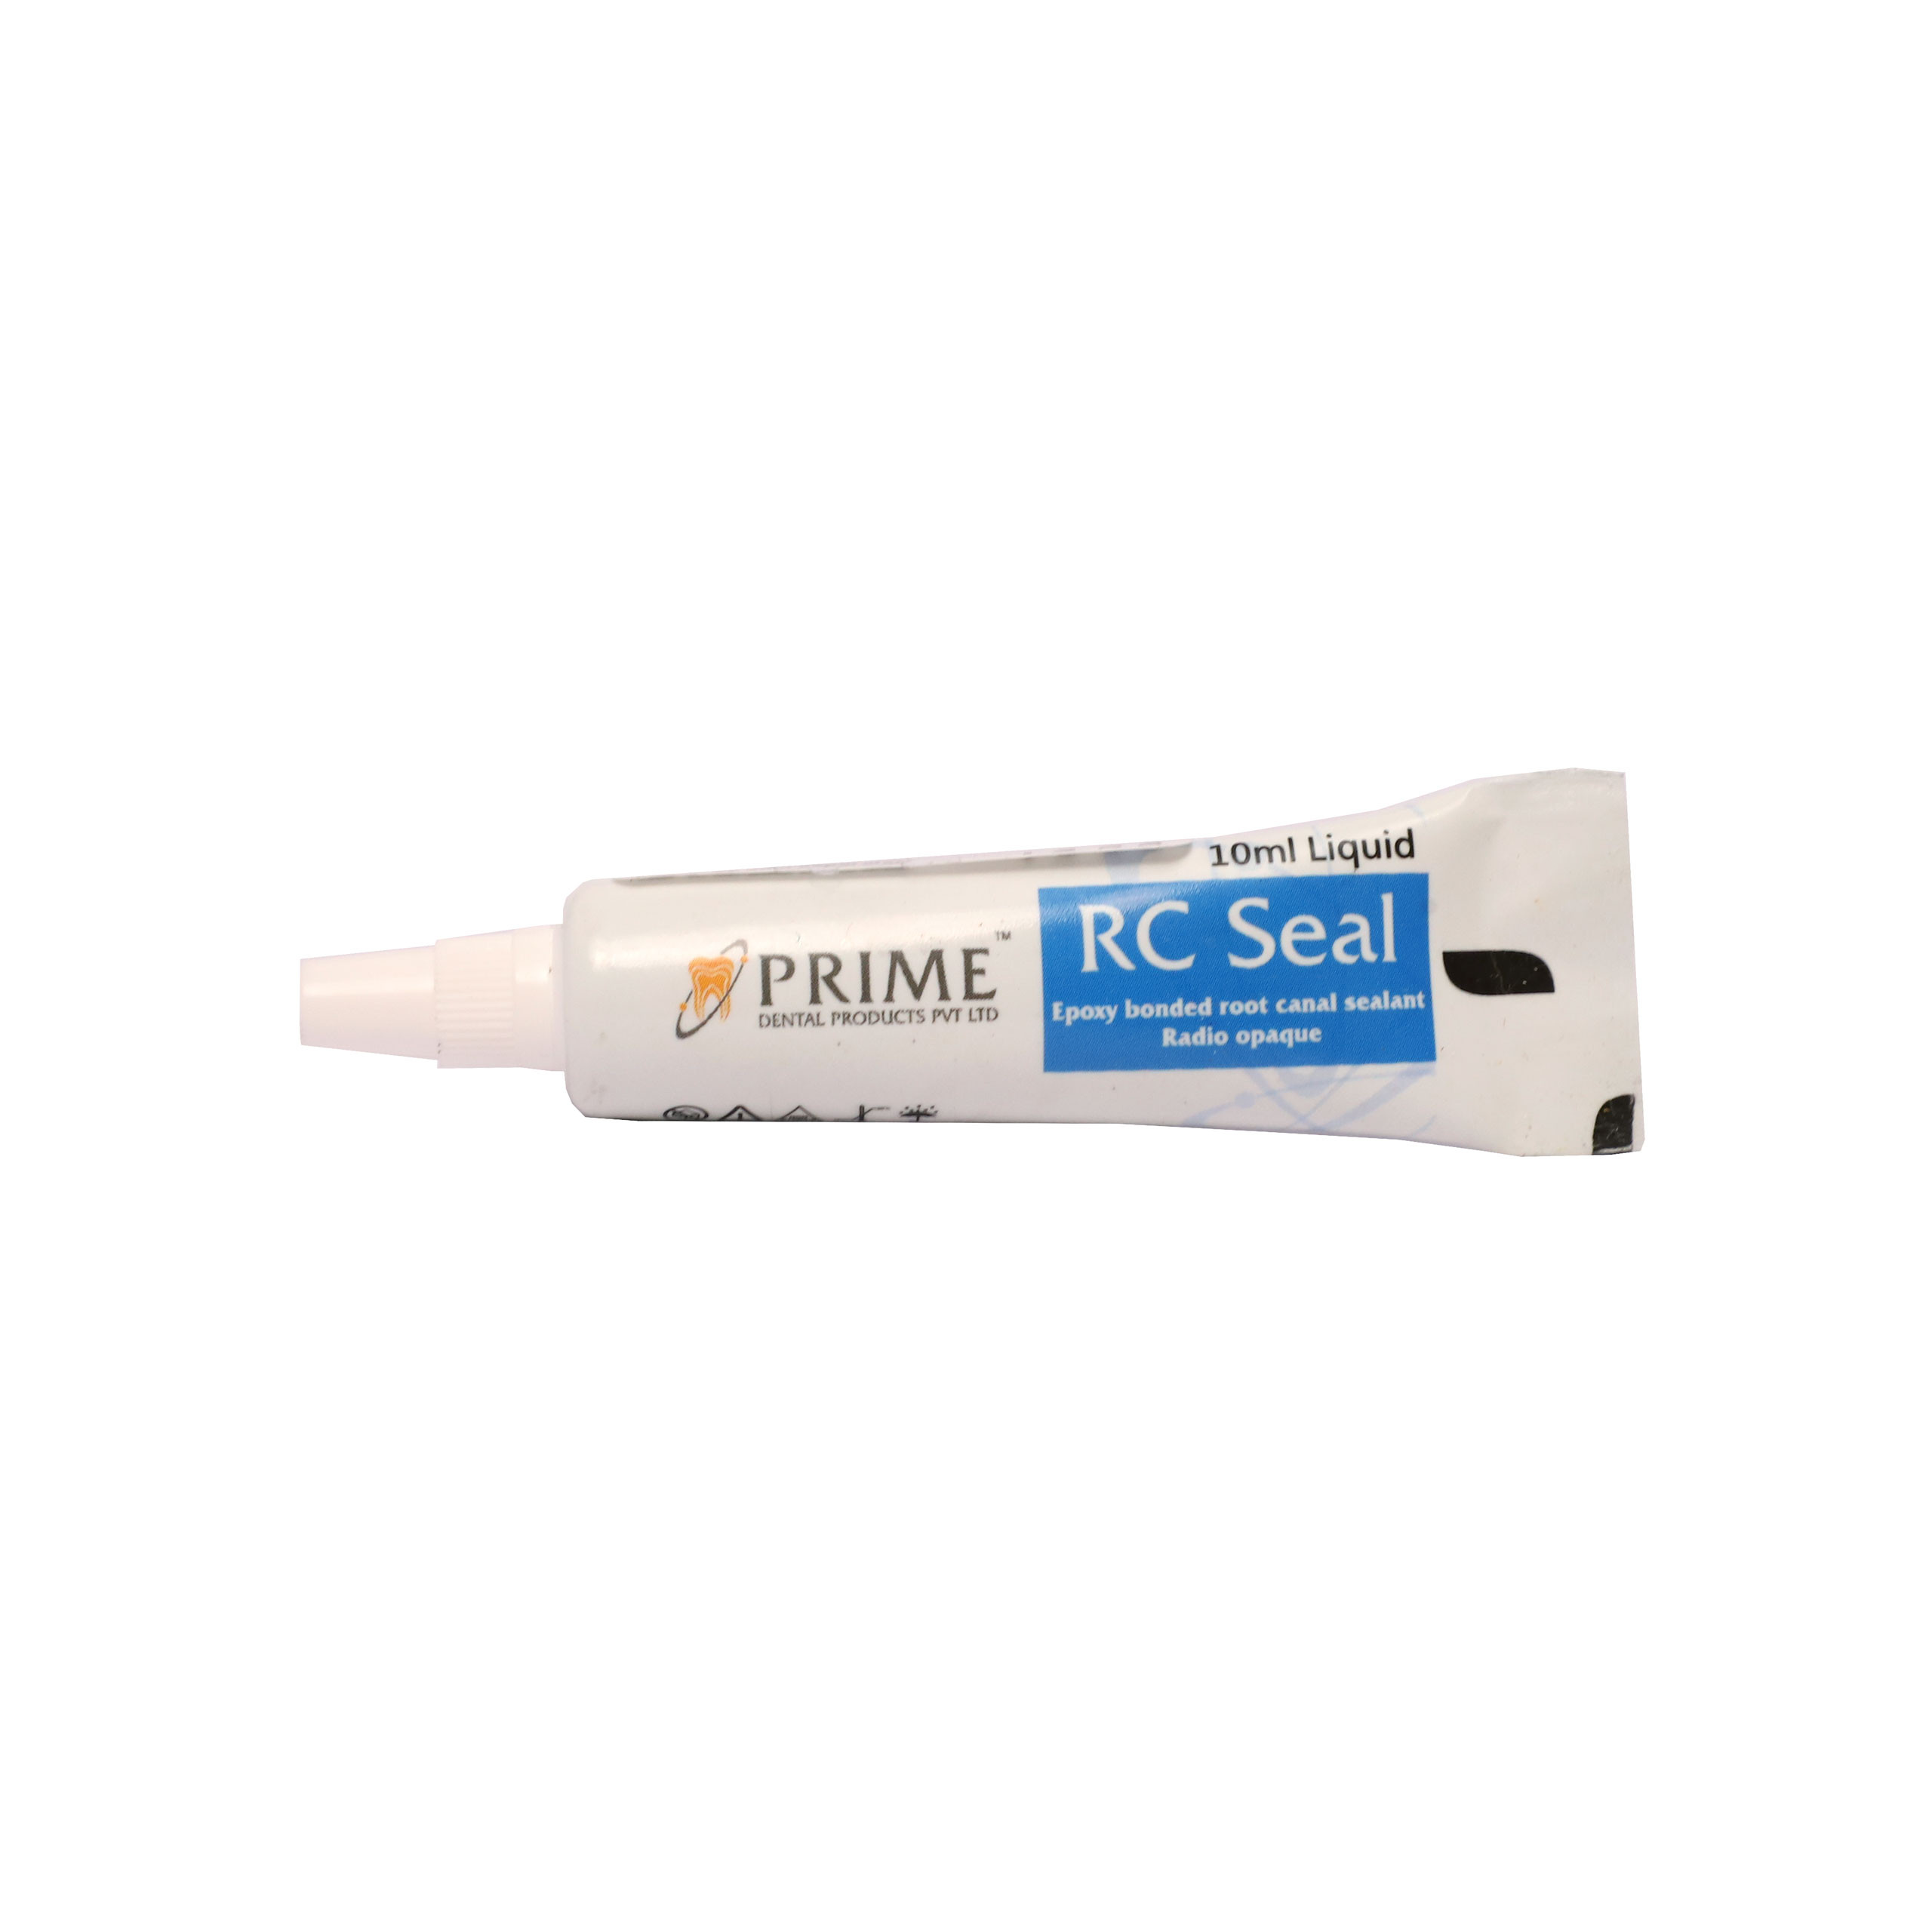 Prime RC Seal